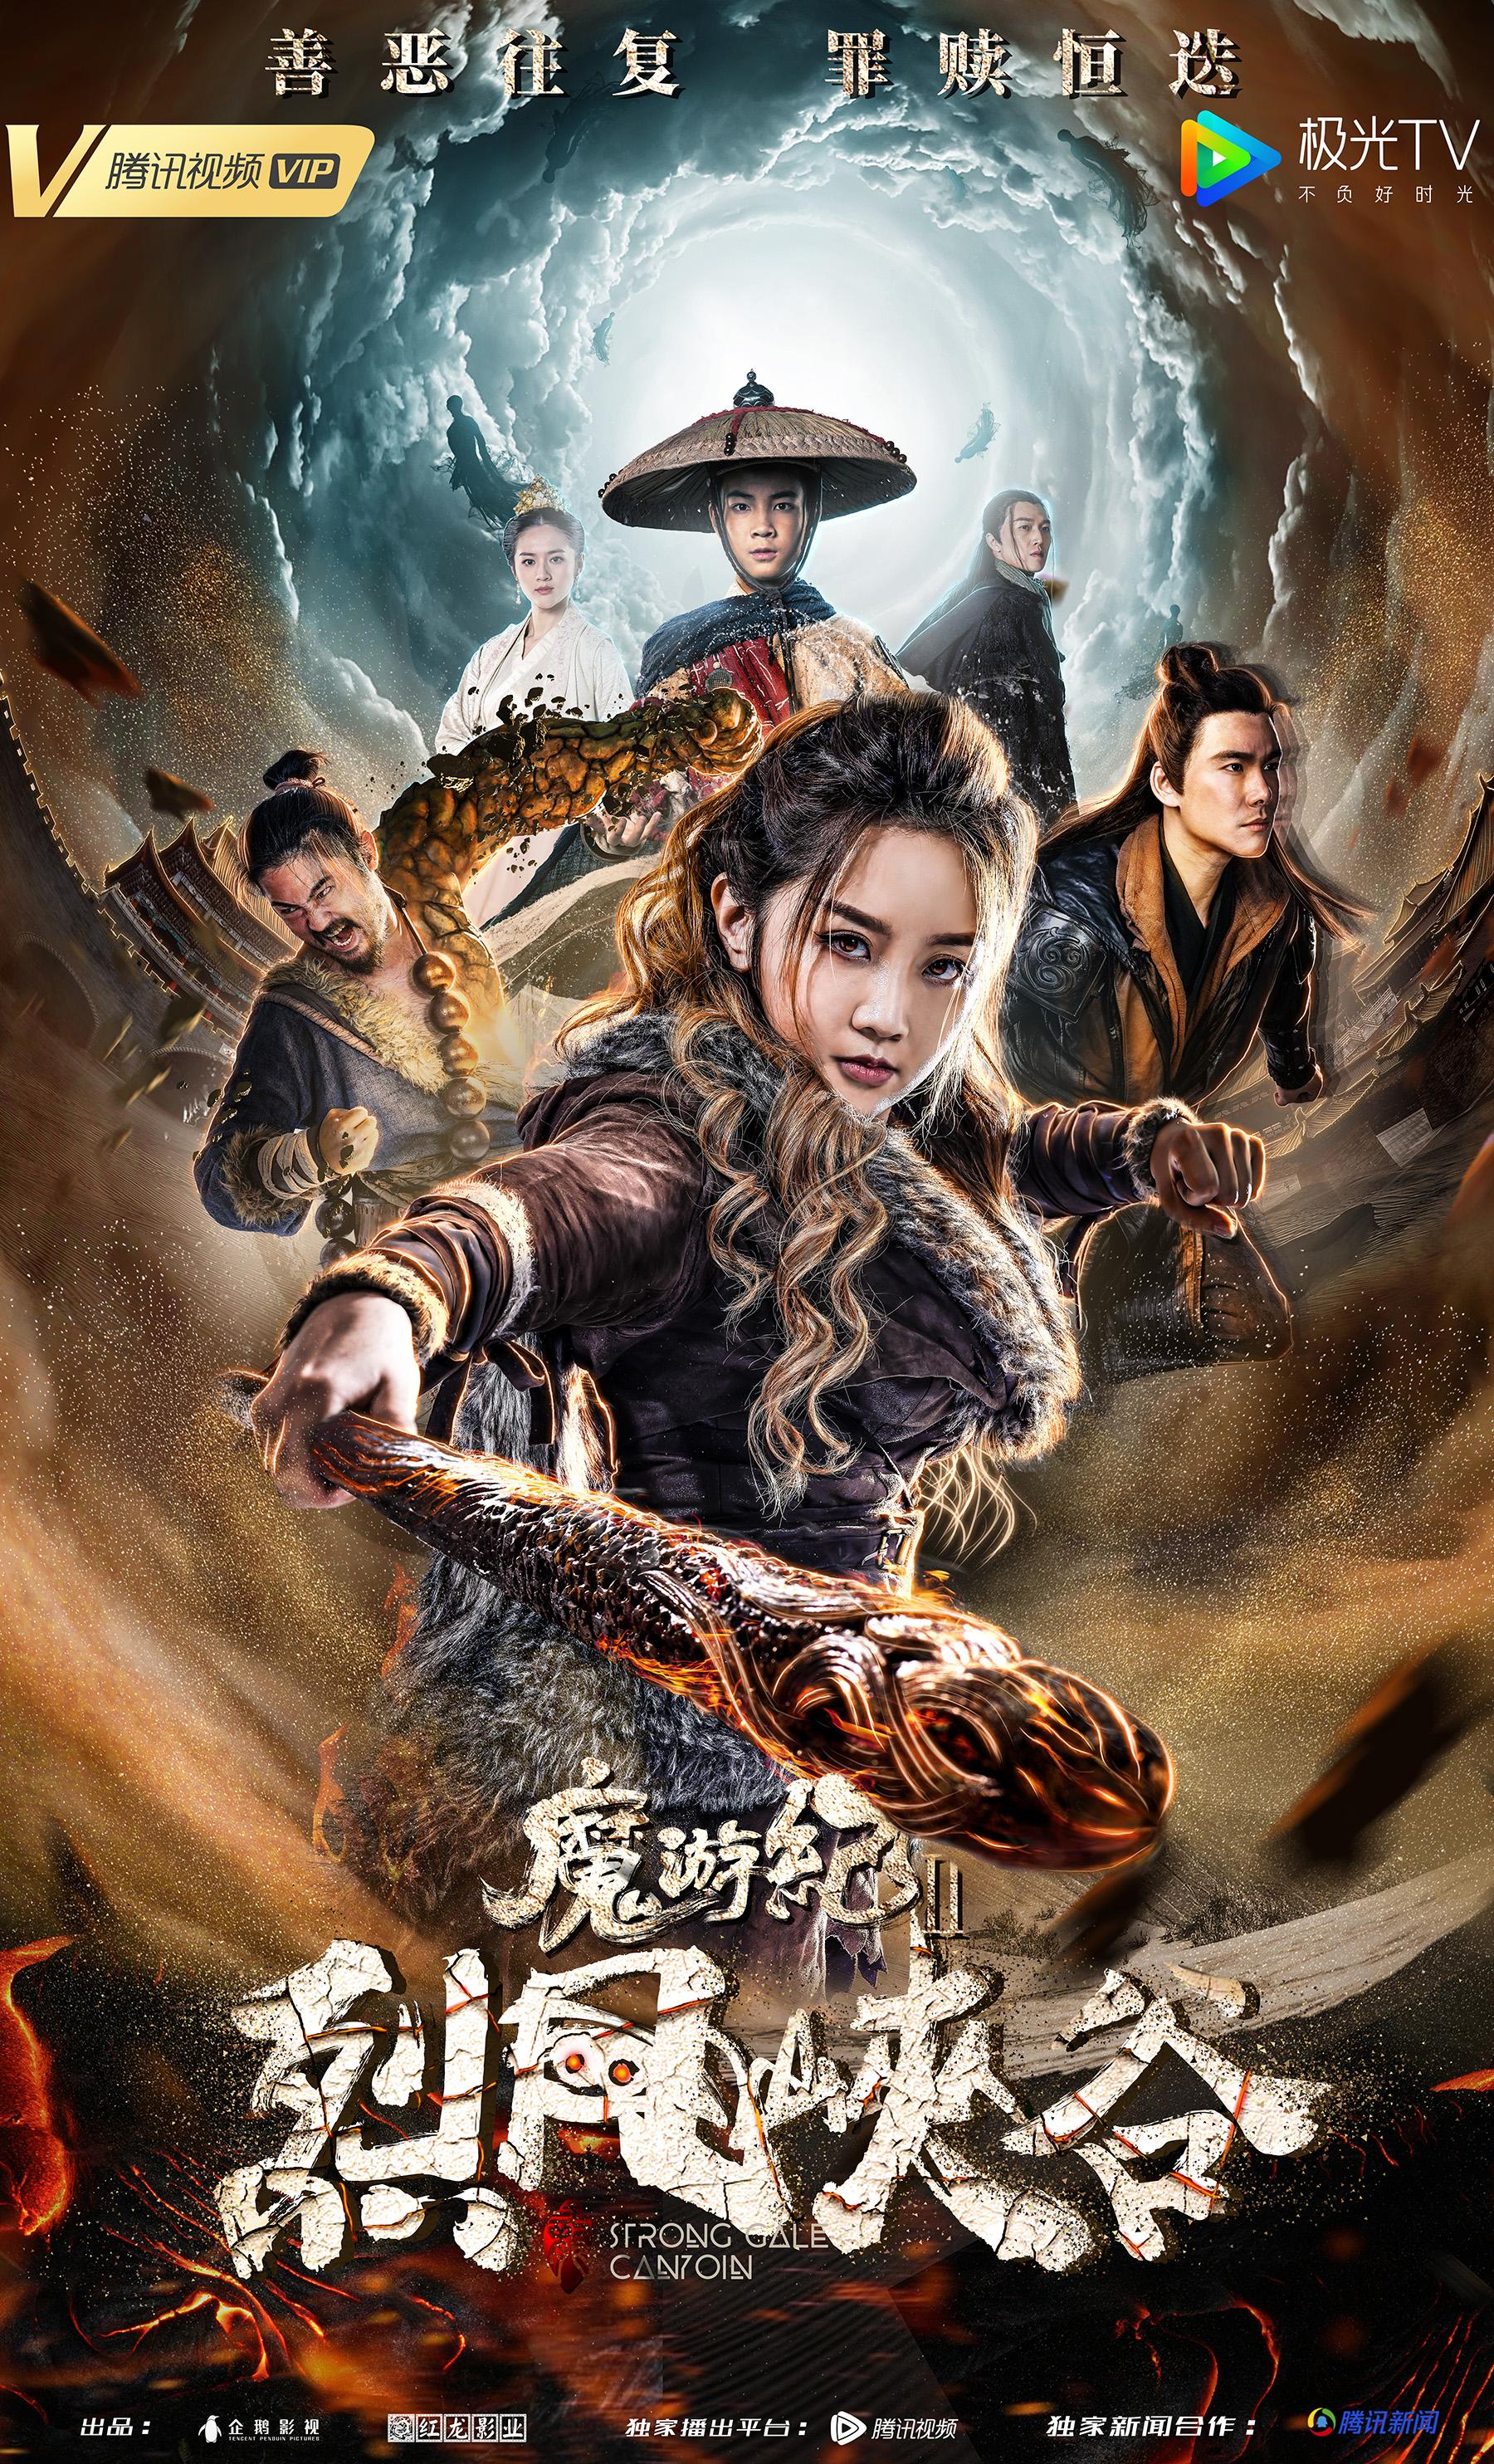 китайские фильмы дорамы фантастика исторические фото 34